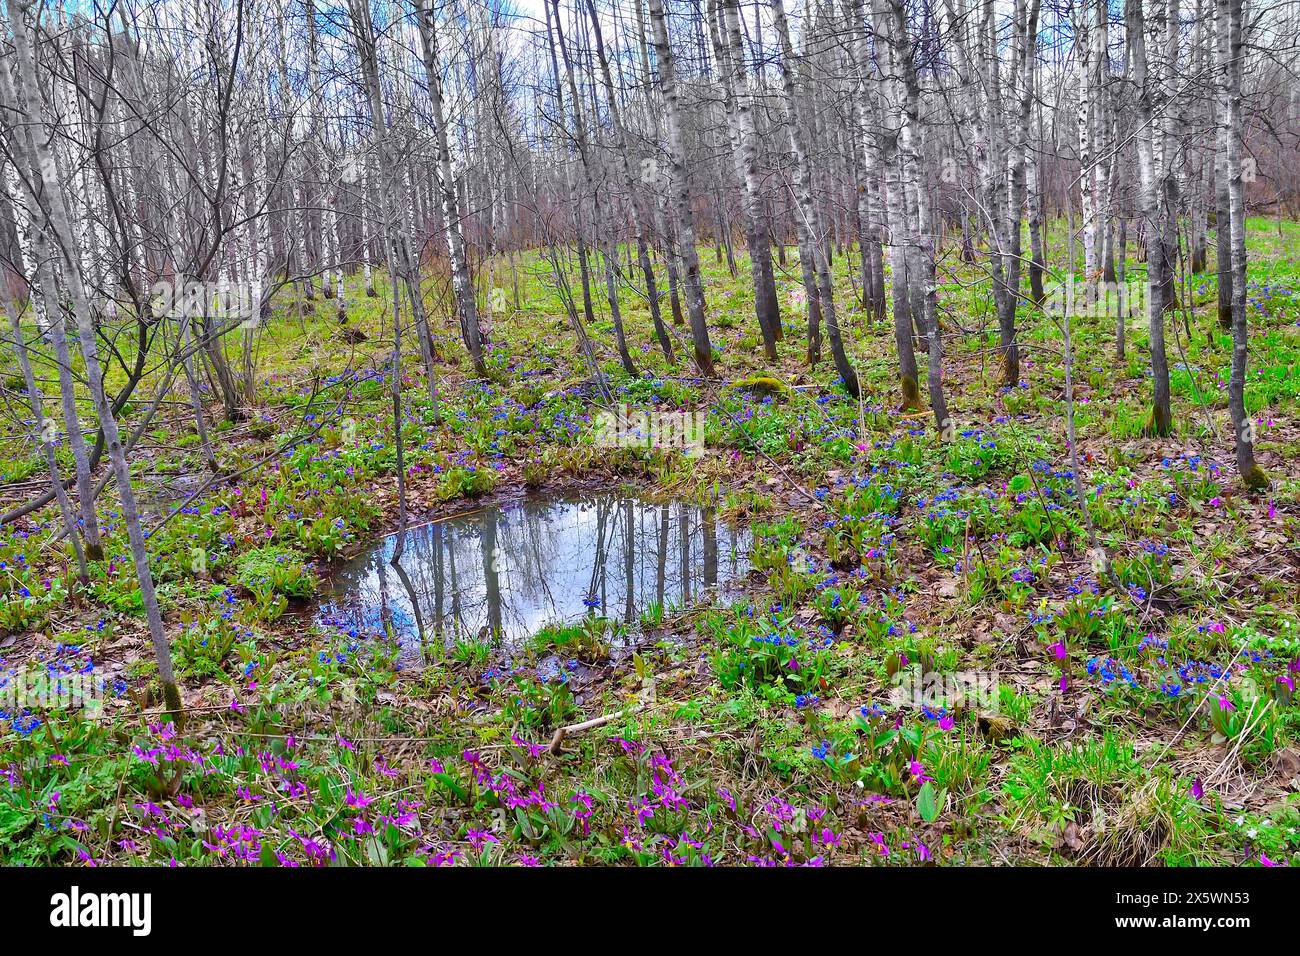 Paysage pittoresque du début du printemps dans une plantation de bouleaux avec les premières fleurs sauvages blanches, bleues et violettes sur la clairière de la forêt, des arbres sans feuilles et le ciel bleu reflété Banque D'Images